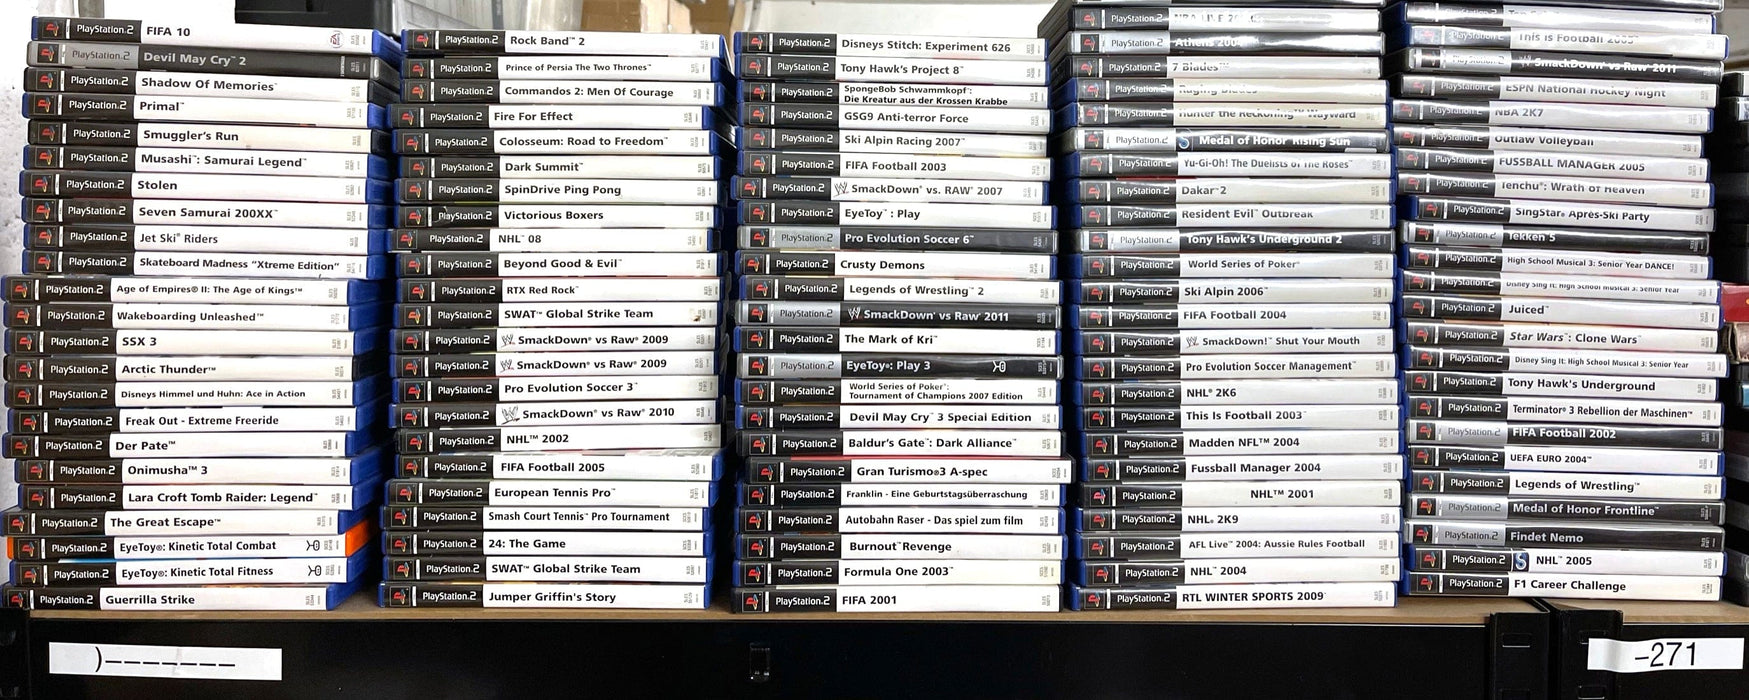 Glaciergames PlayStation 2 Game 3 Engel für Charlie PlayStation 2 (Nr.808)